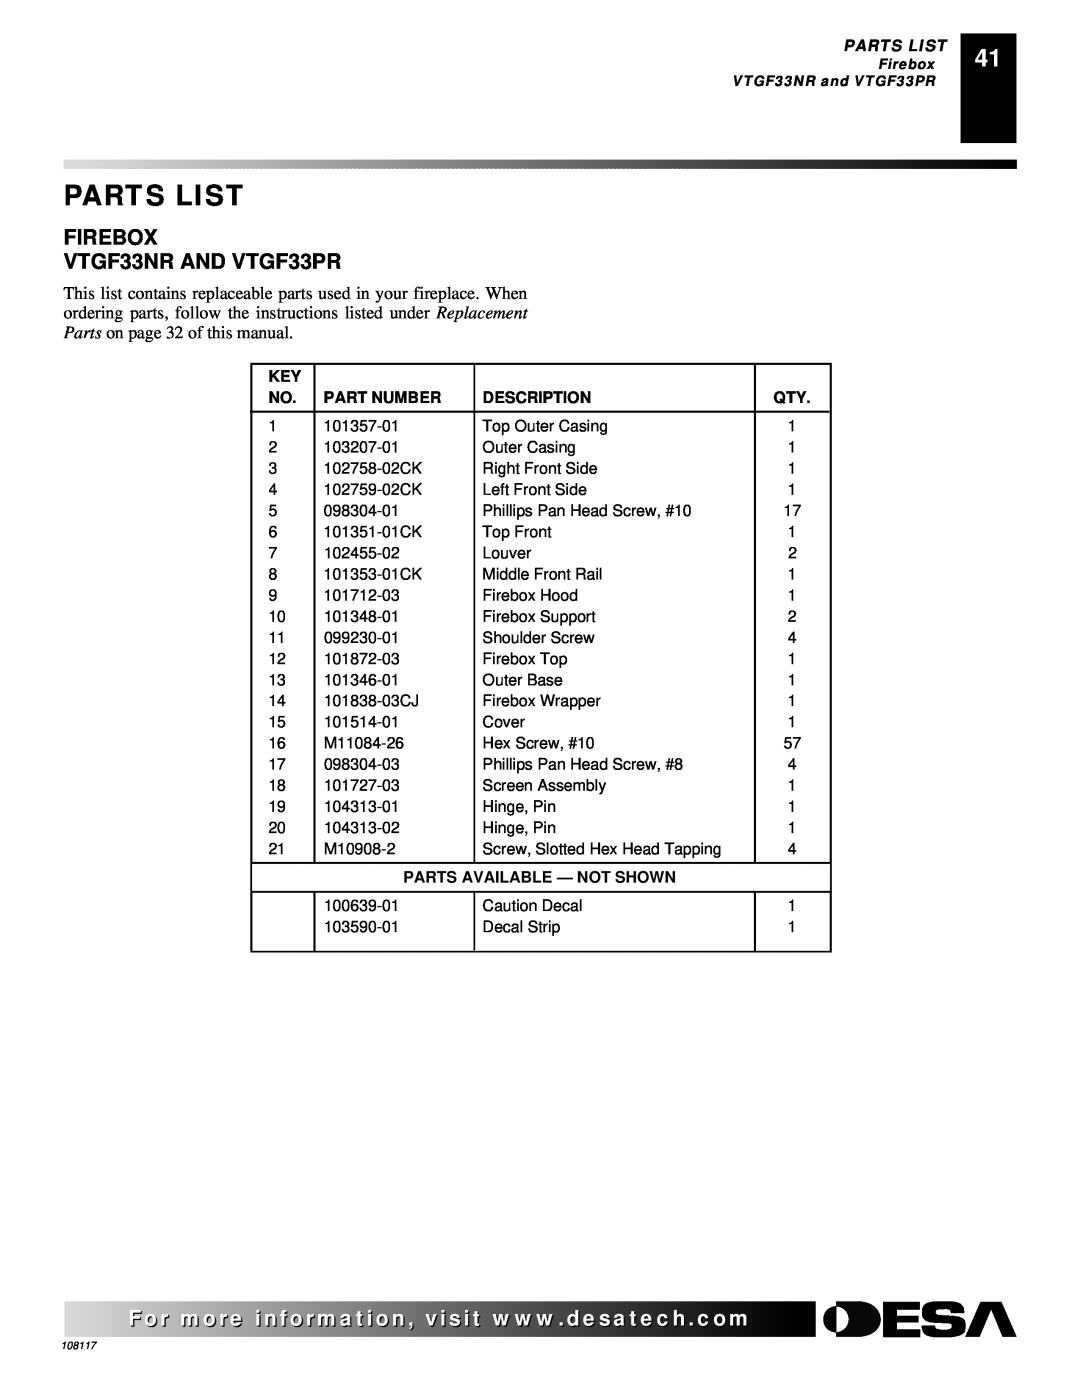 Desa CGEFP33PR Parts List, FIREBOX VTGF33NR AND VTGF33PR, Part Number, Description, Parts Available - Not Shown 